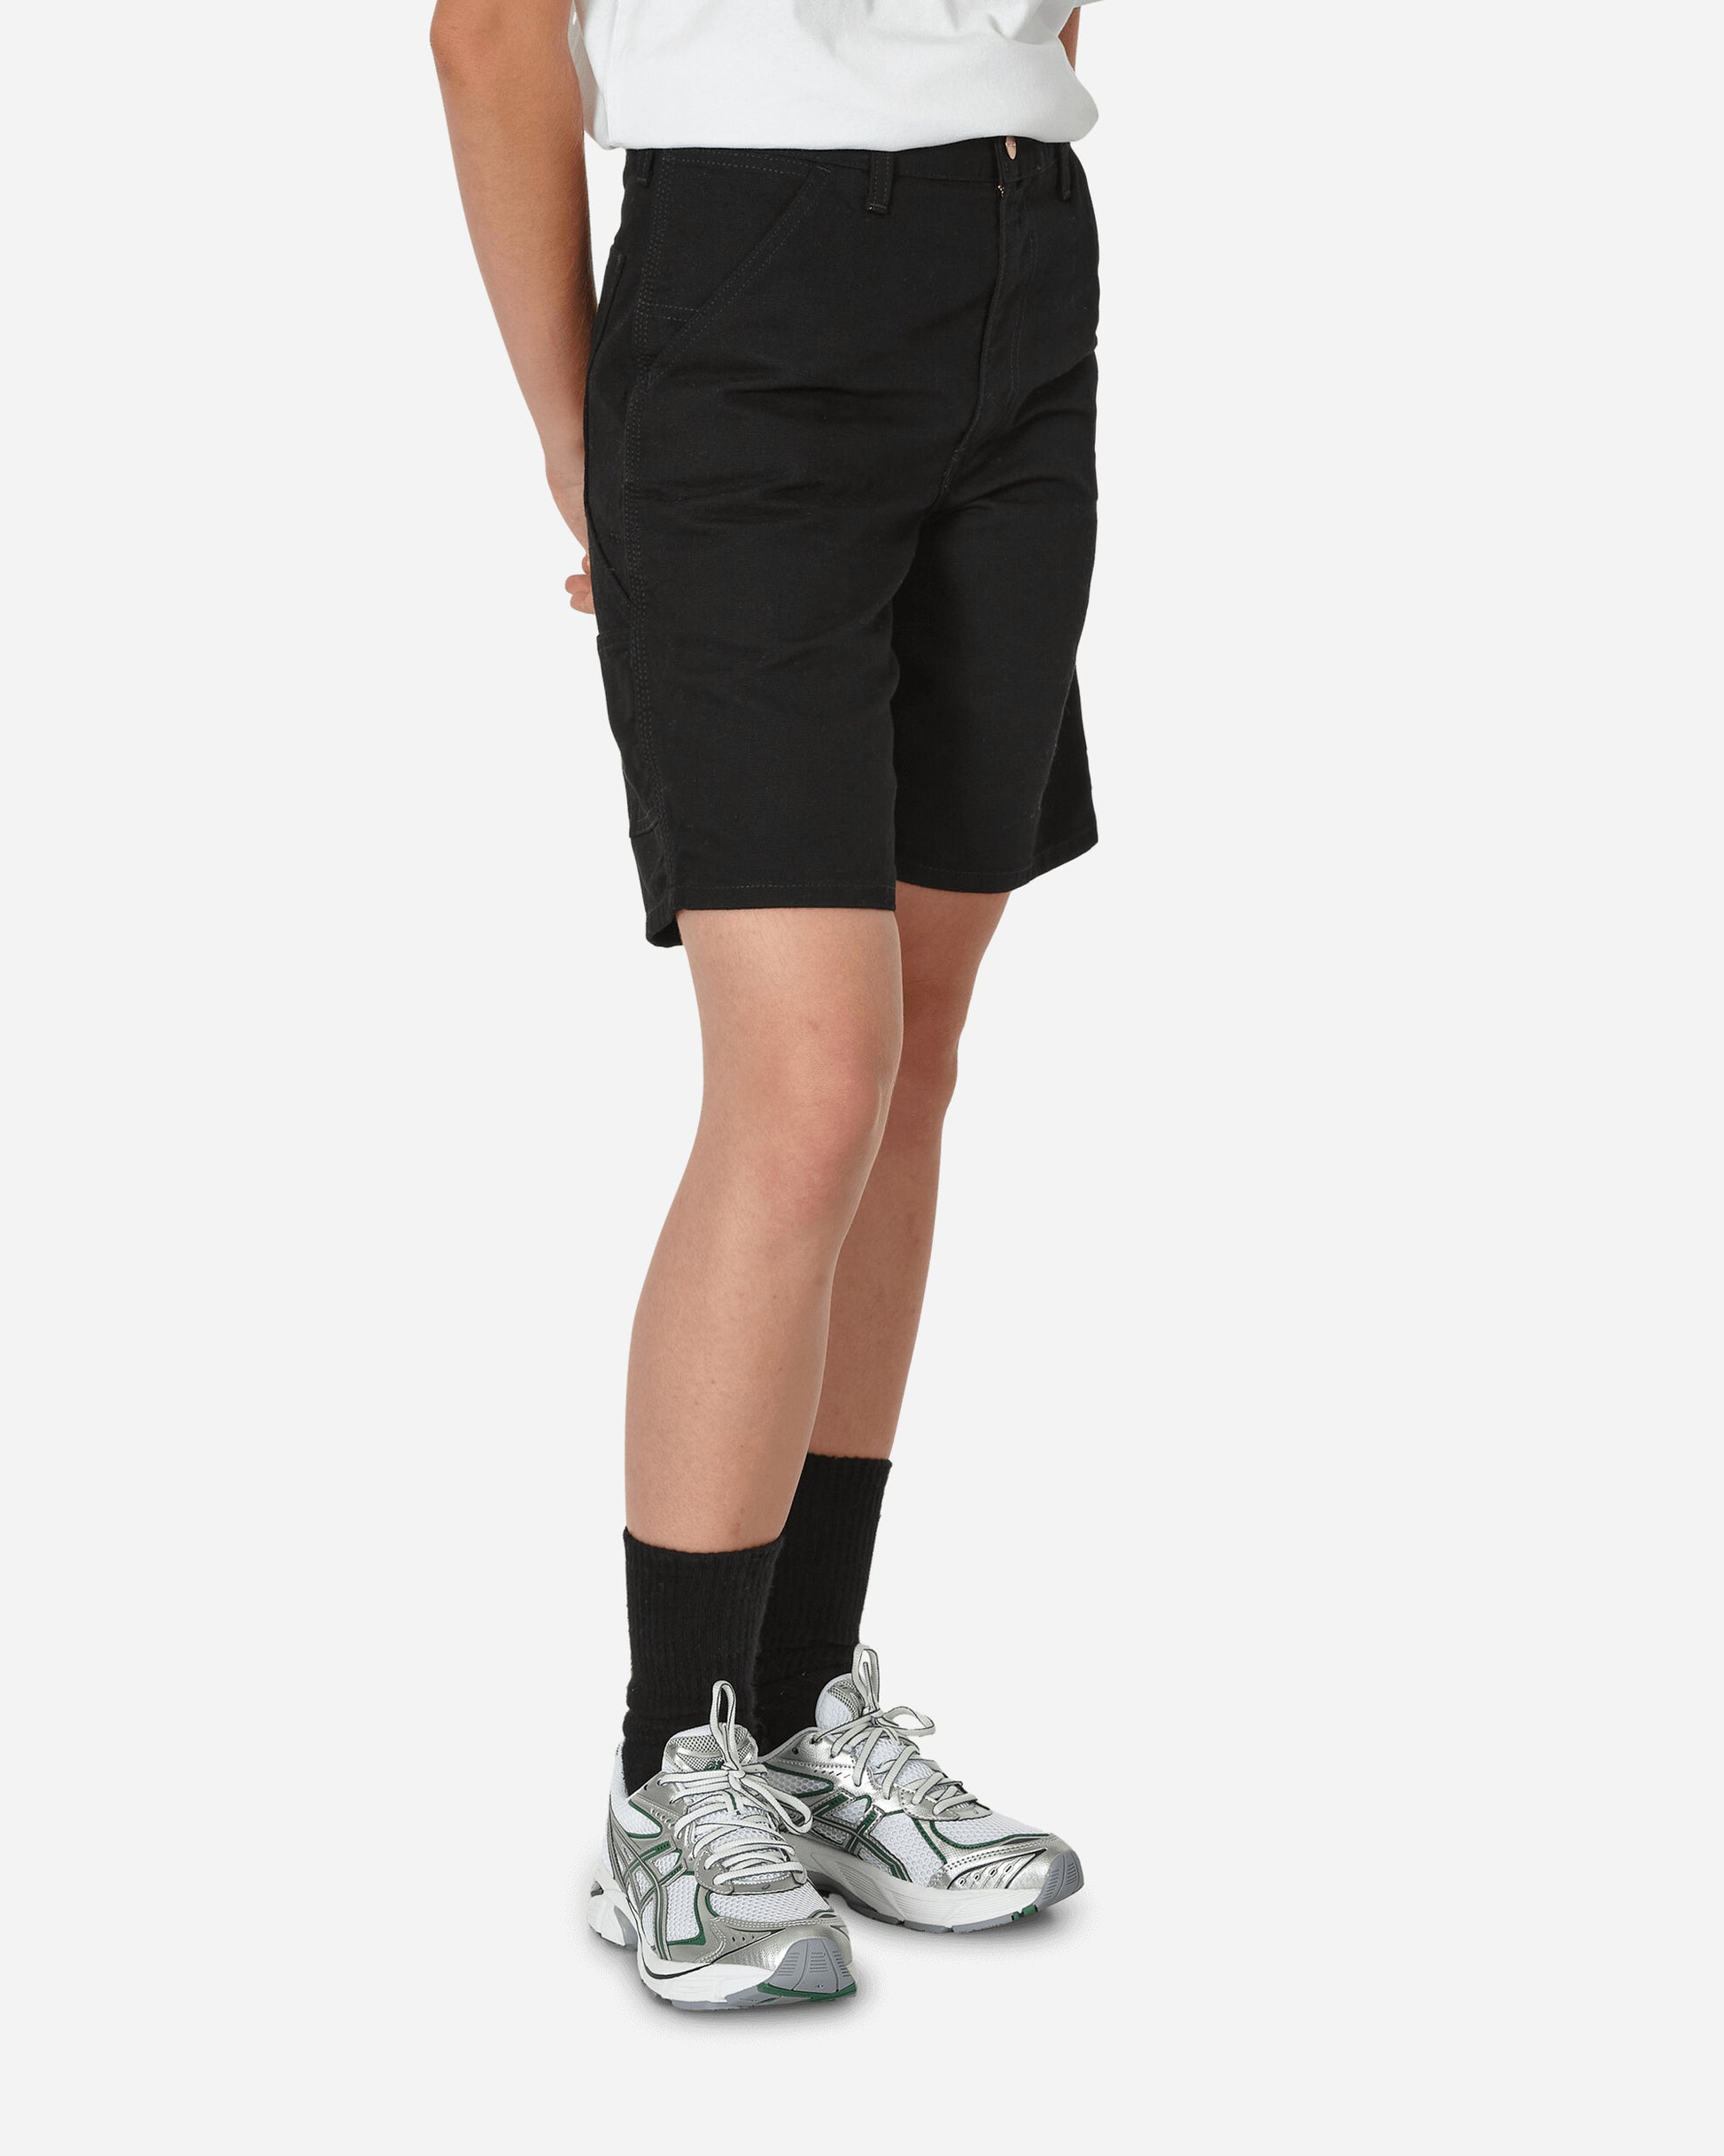 Carhartt WIP Single Knee Short Black Shorts Short I027942 8902